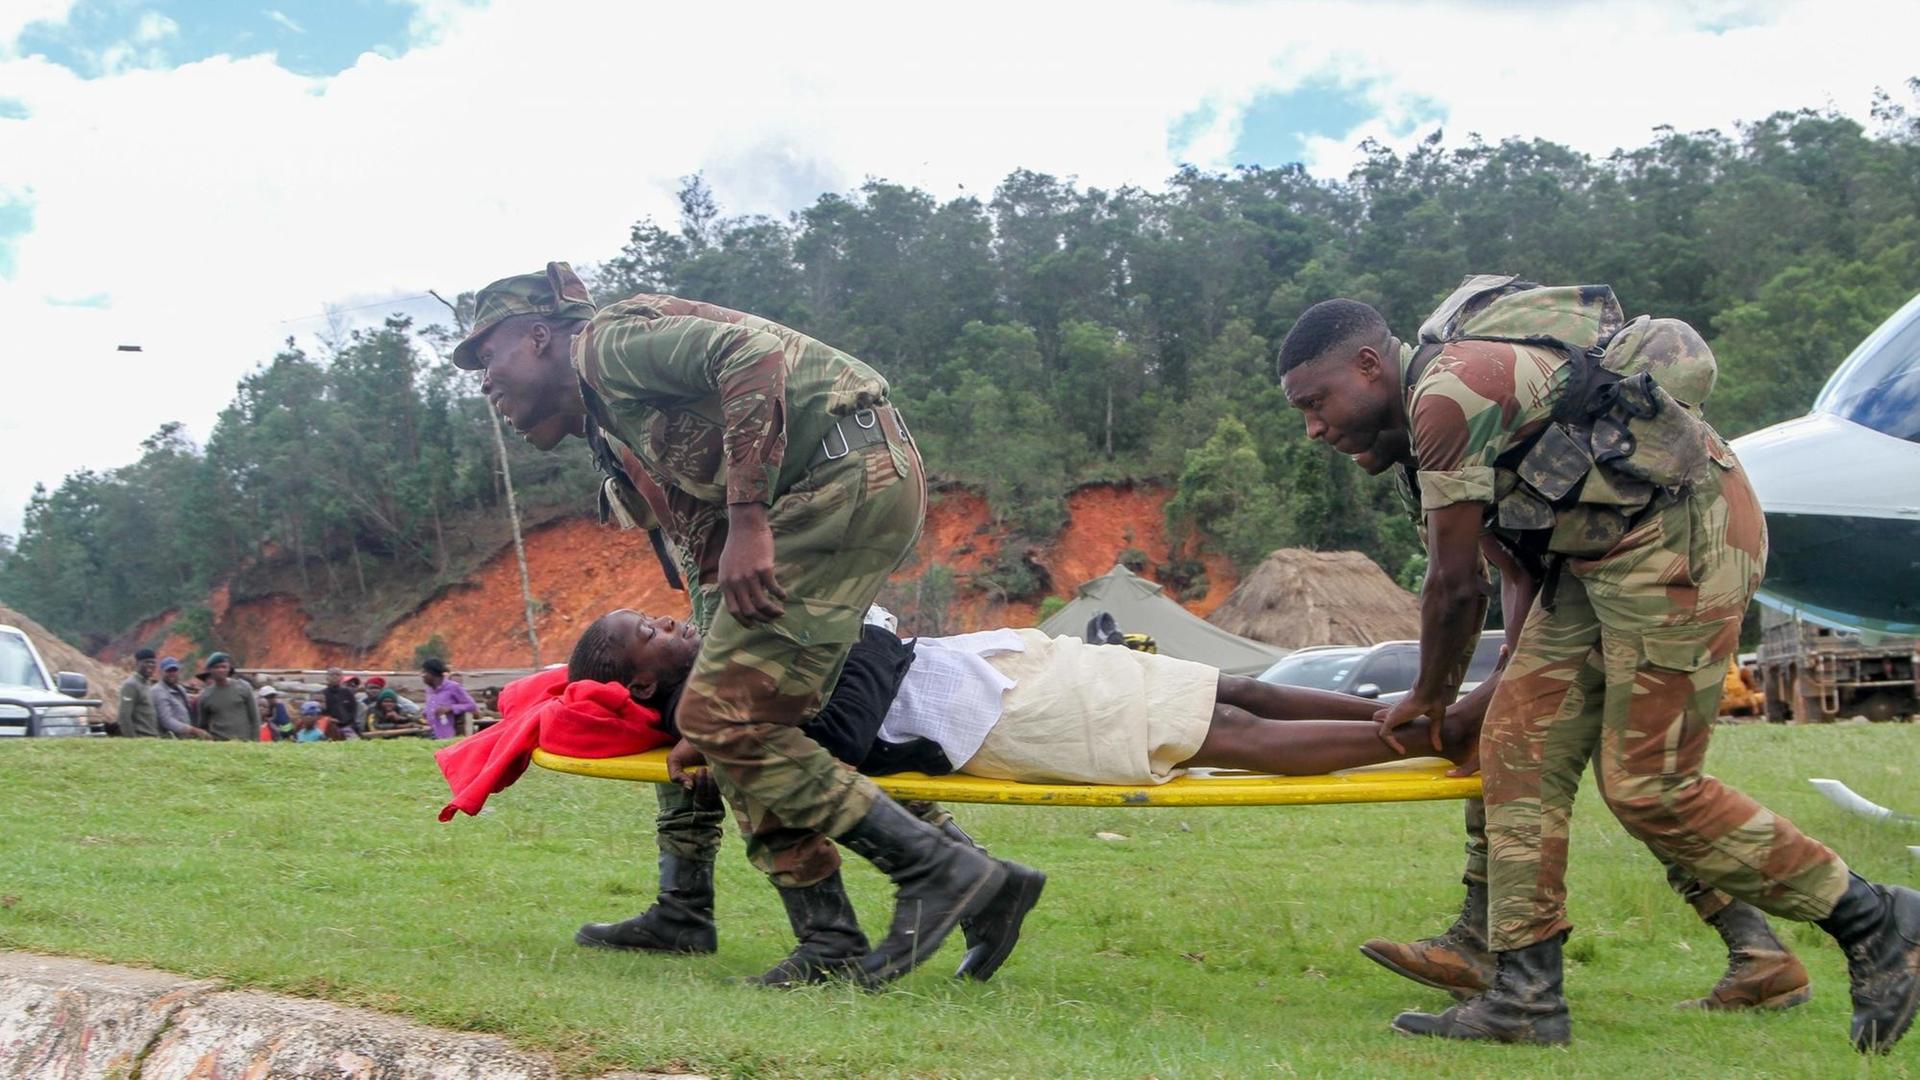 Ein Schwerverletzter wird von Hilfskräften zu einem Hubschrauber gefahren in Chimanimani in Simbabwe am 19. März 2019.